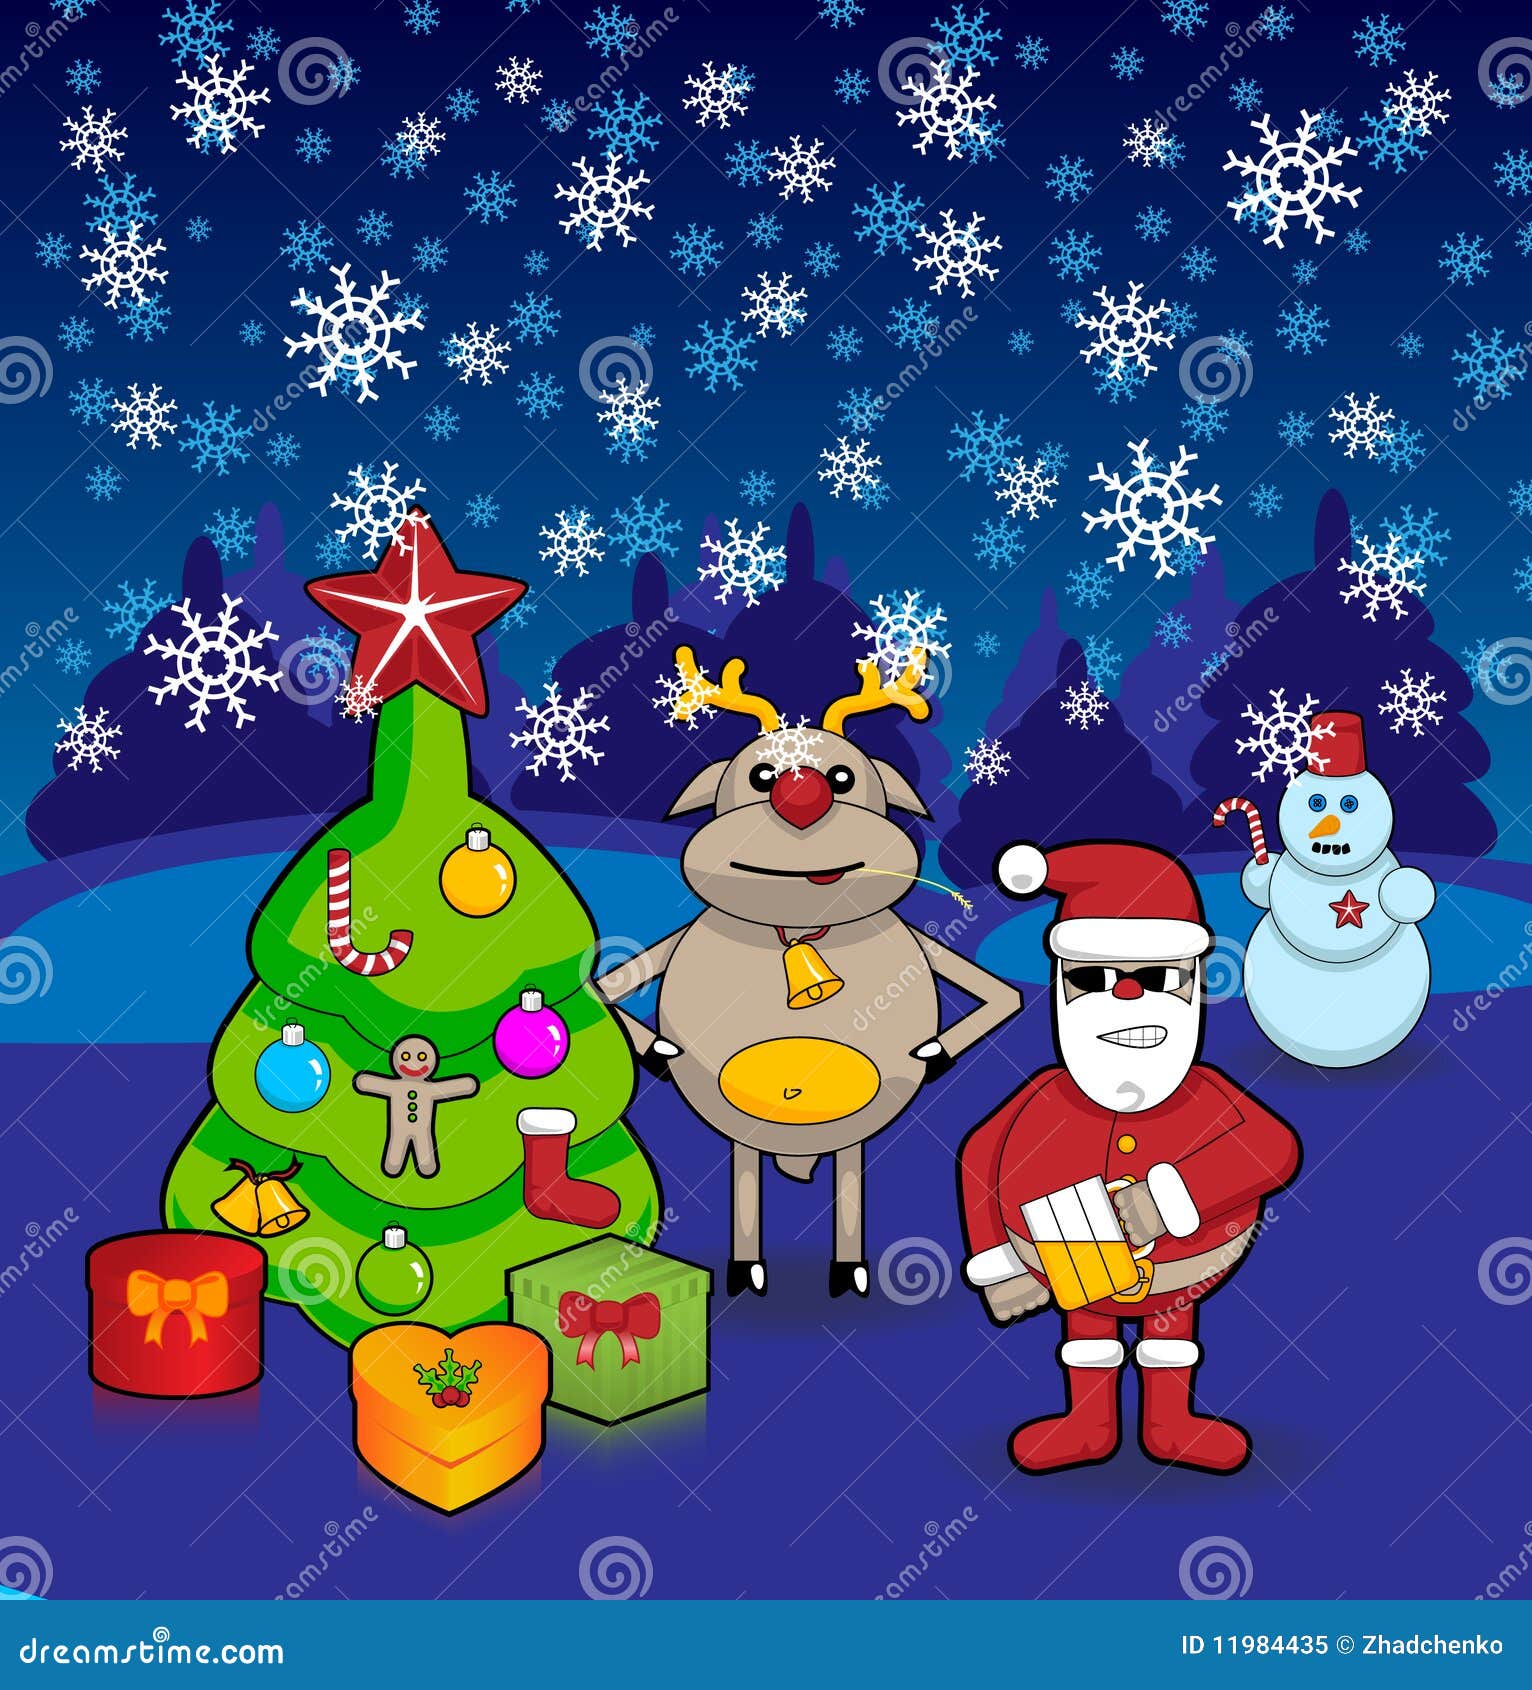 Jul dekorerade pälsgåvor gående rund santa som för den klaus renen snow kastar snöboll till treen, var vinterträ